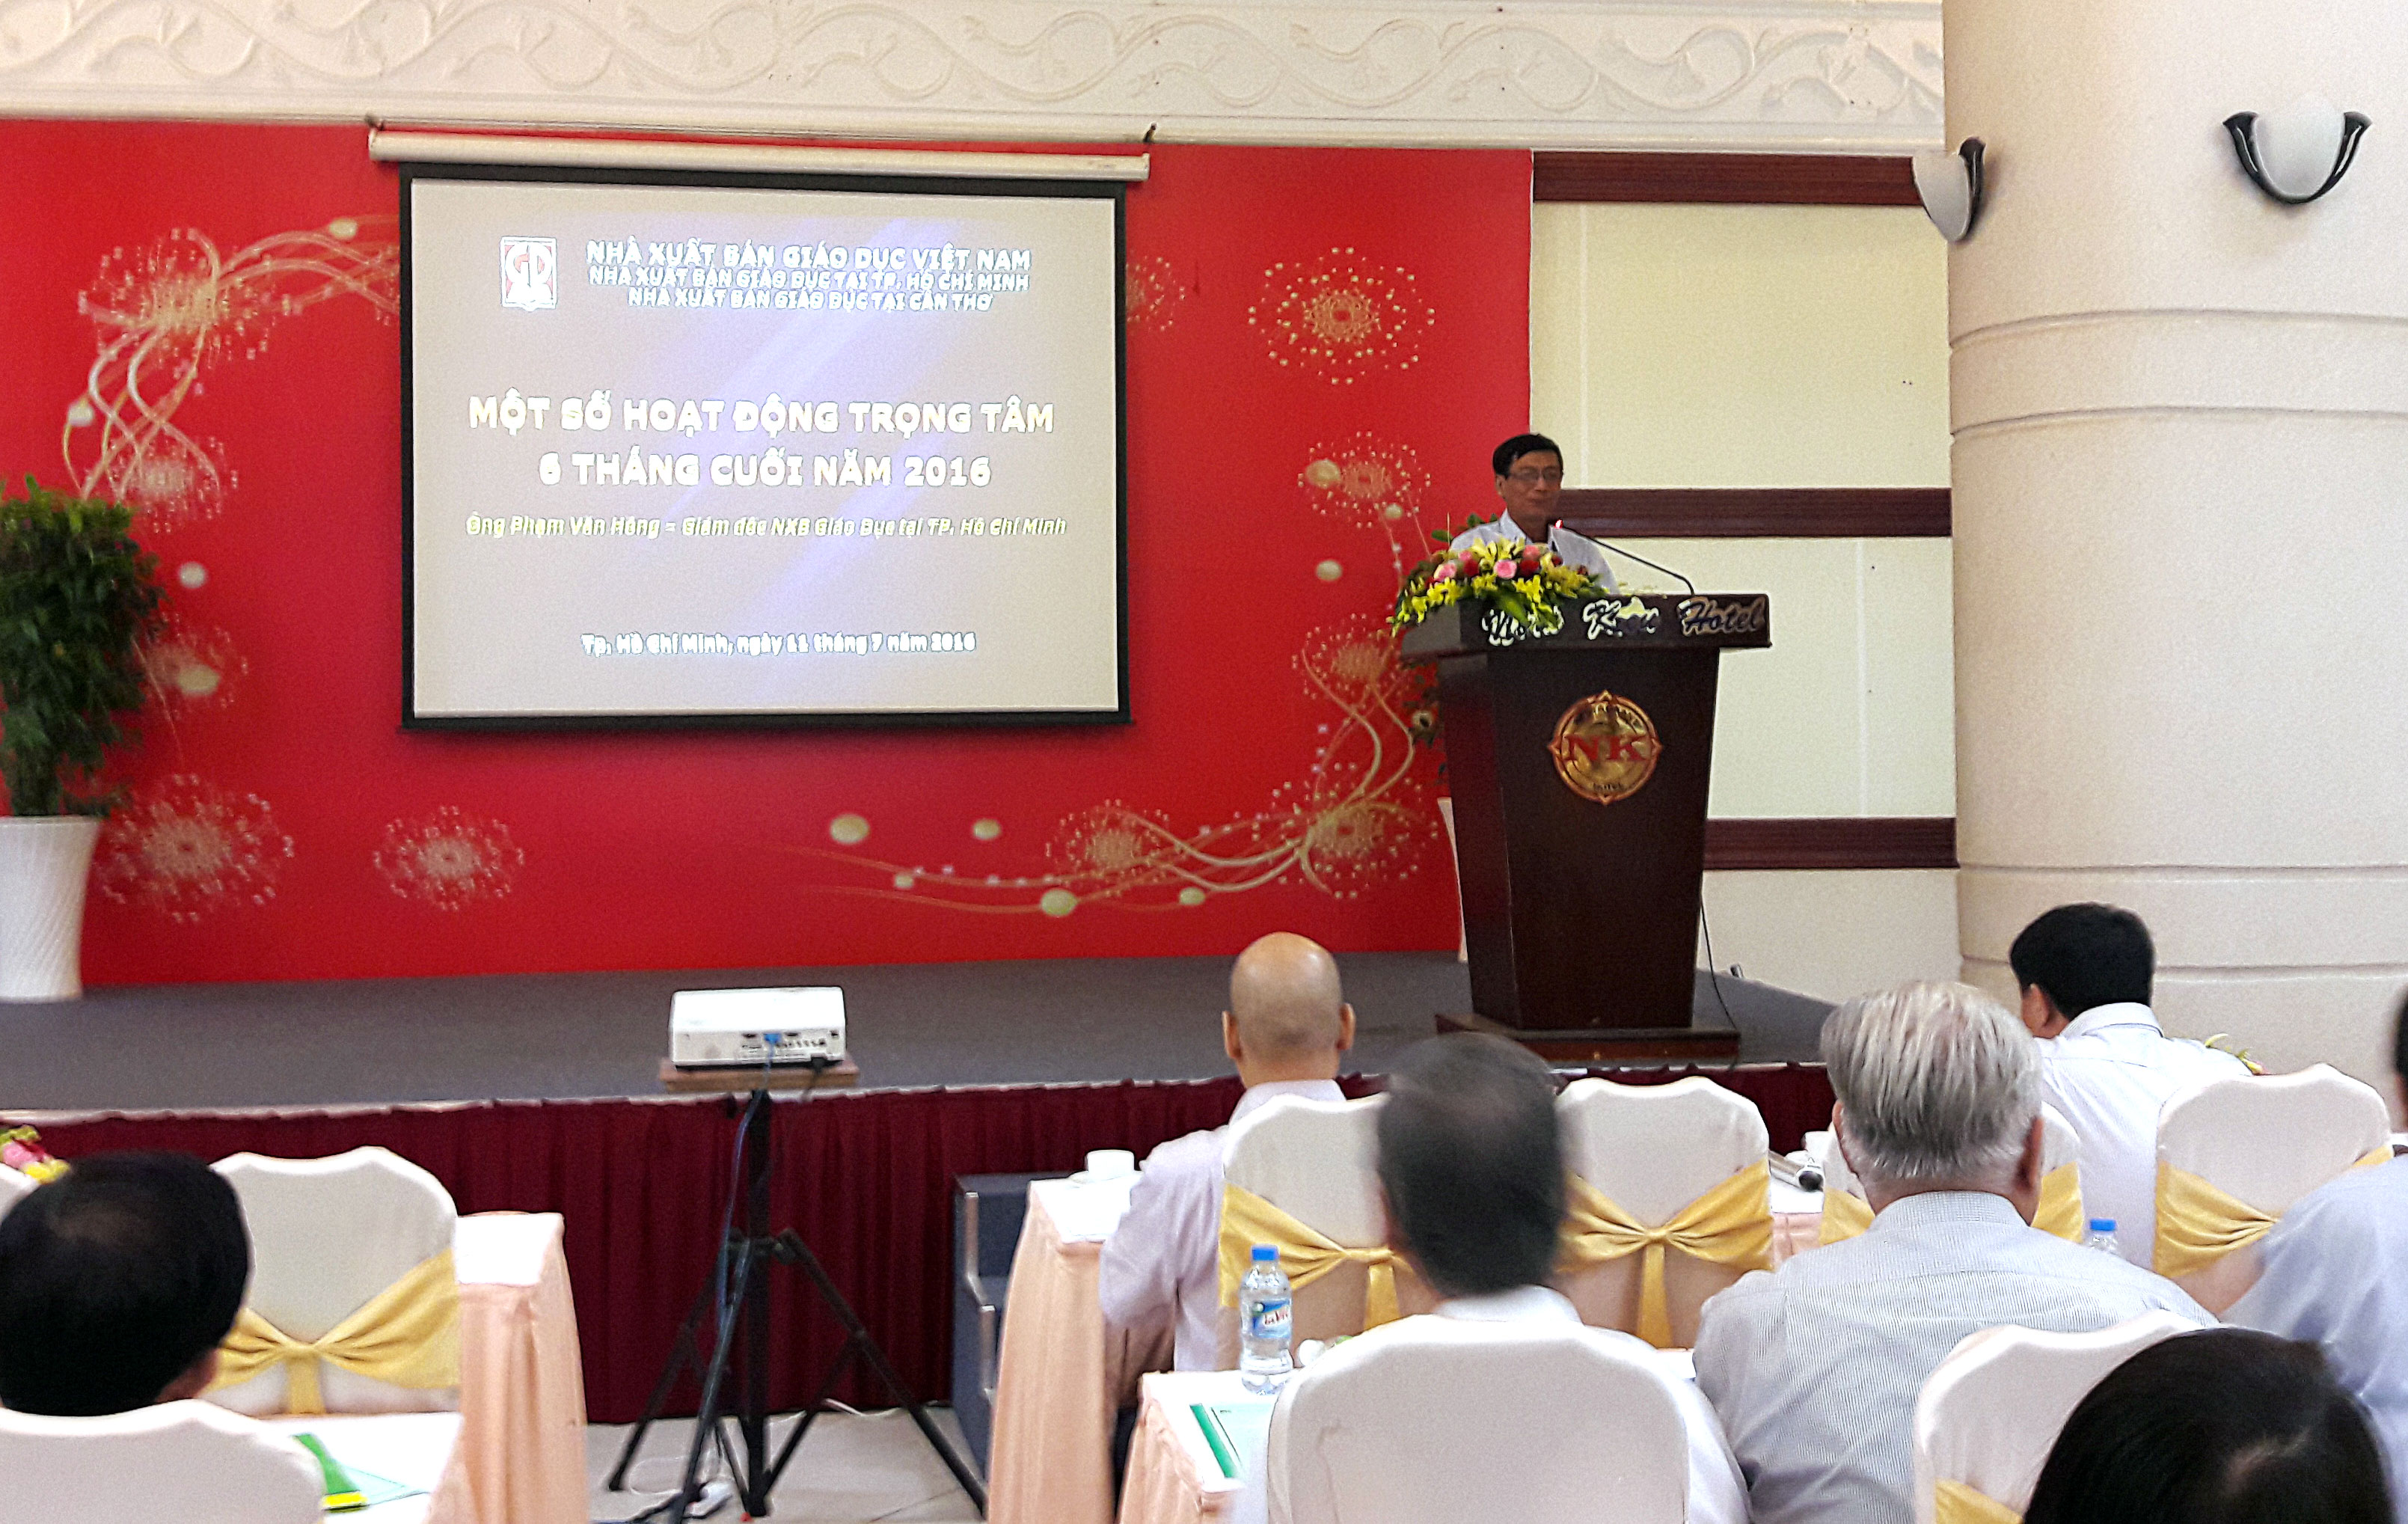 Ông Phạm Văn Hồng - GĐ NXBGD tại TP. Hồ Chí Minh triển khai các hoạt động trọng tâm 6 tháng cuối năm 2016 tại hội nghị.